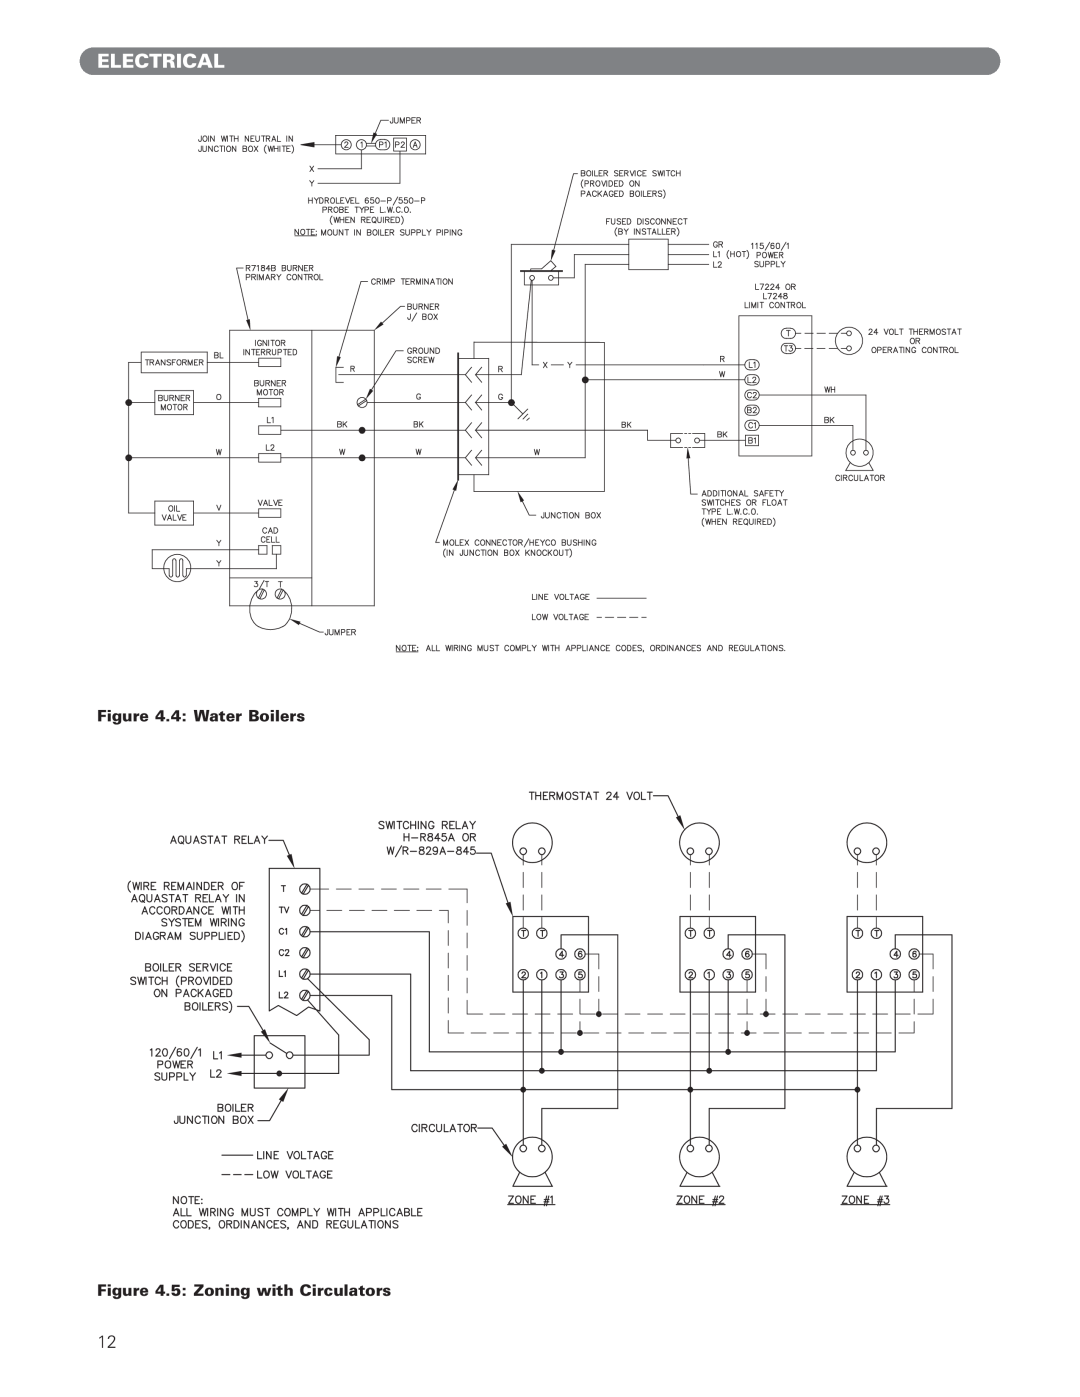 PB Heat ECT Series, EC Series manual Electrical, 4 Water Boilers, 5 Zoning with Circulators 